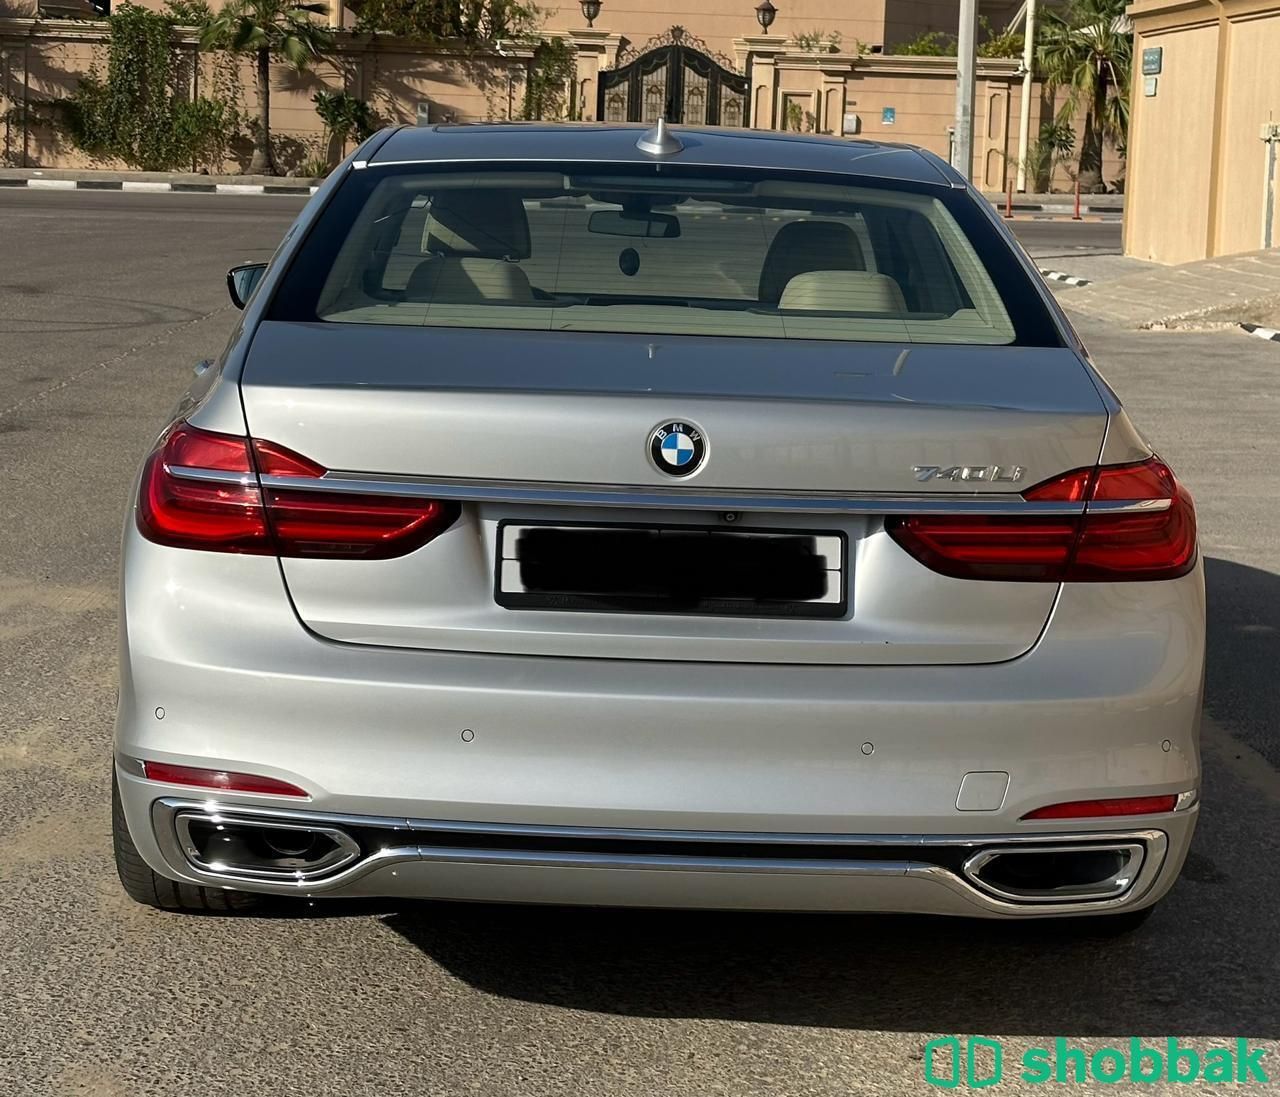 للبيع BMW 740 Li - 2018 نظيف جدا Shobbak Saudi Arabia